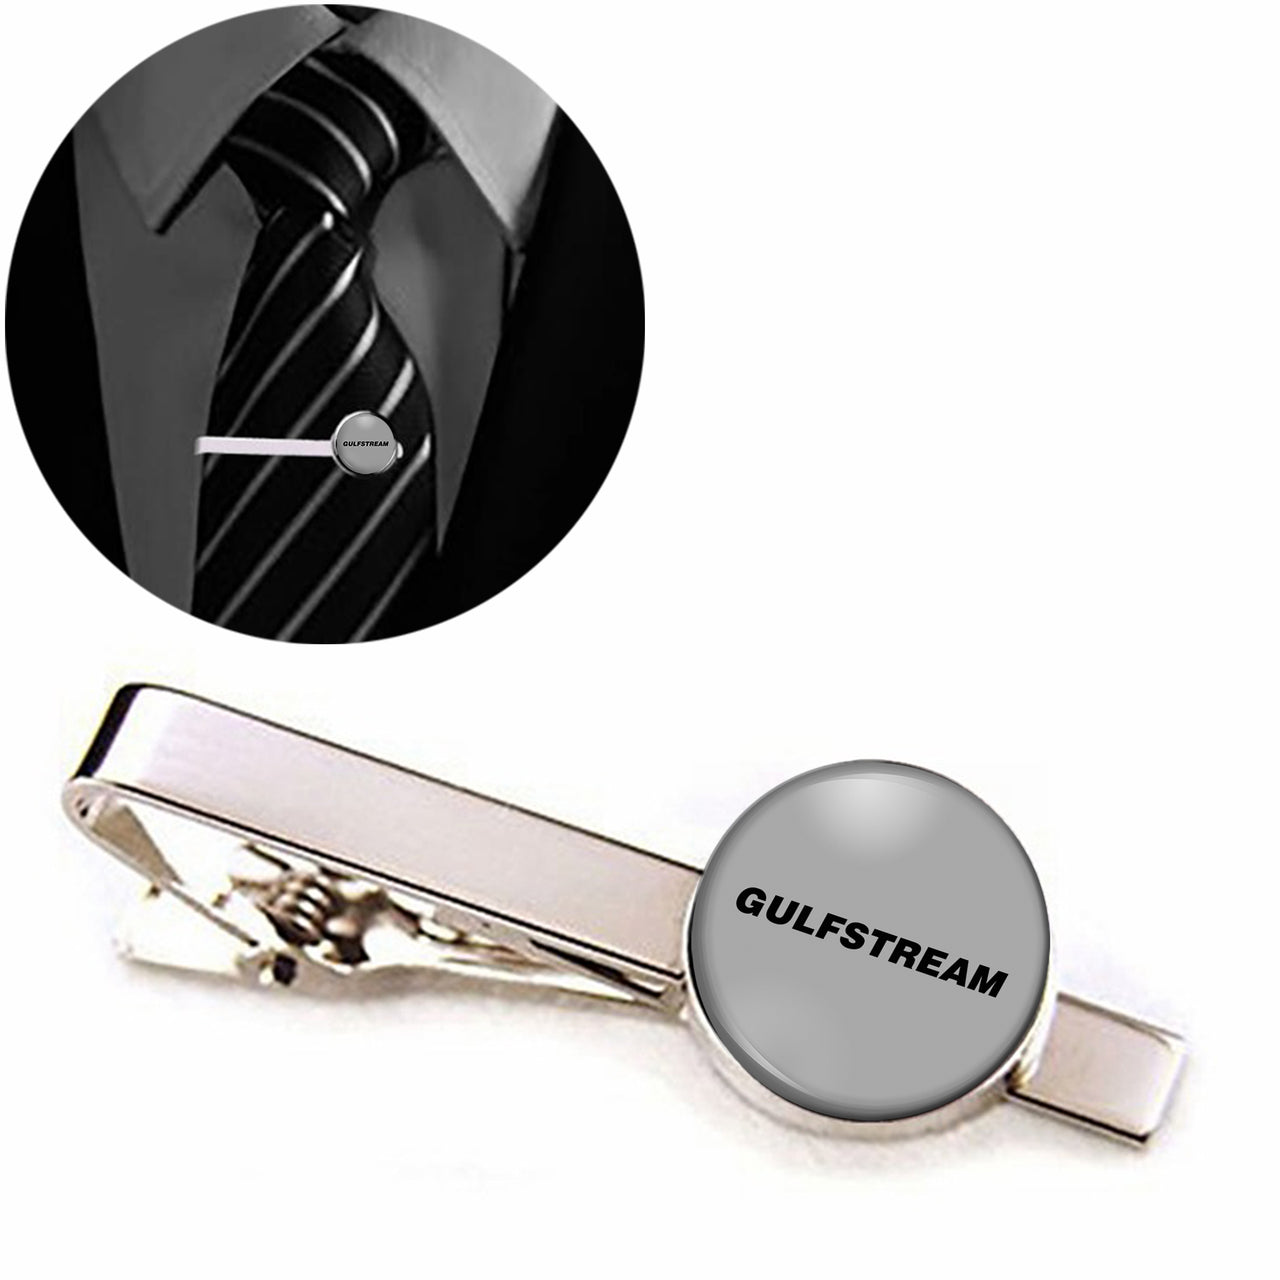 Gulfstream & Text Designed Tie Clips